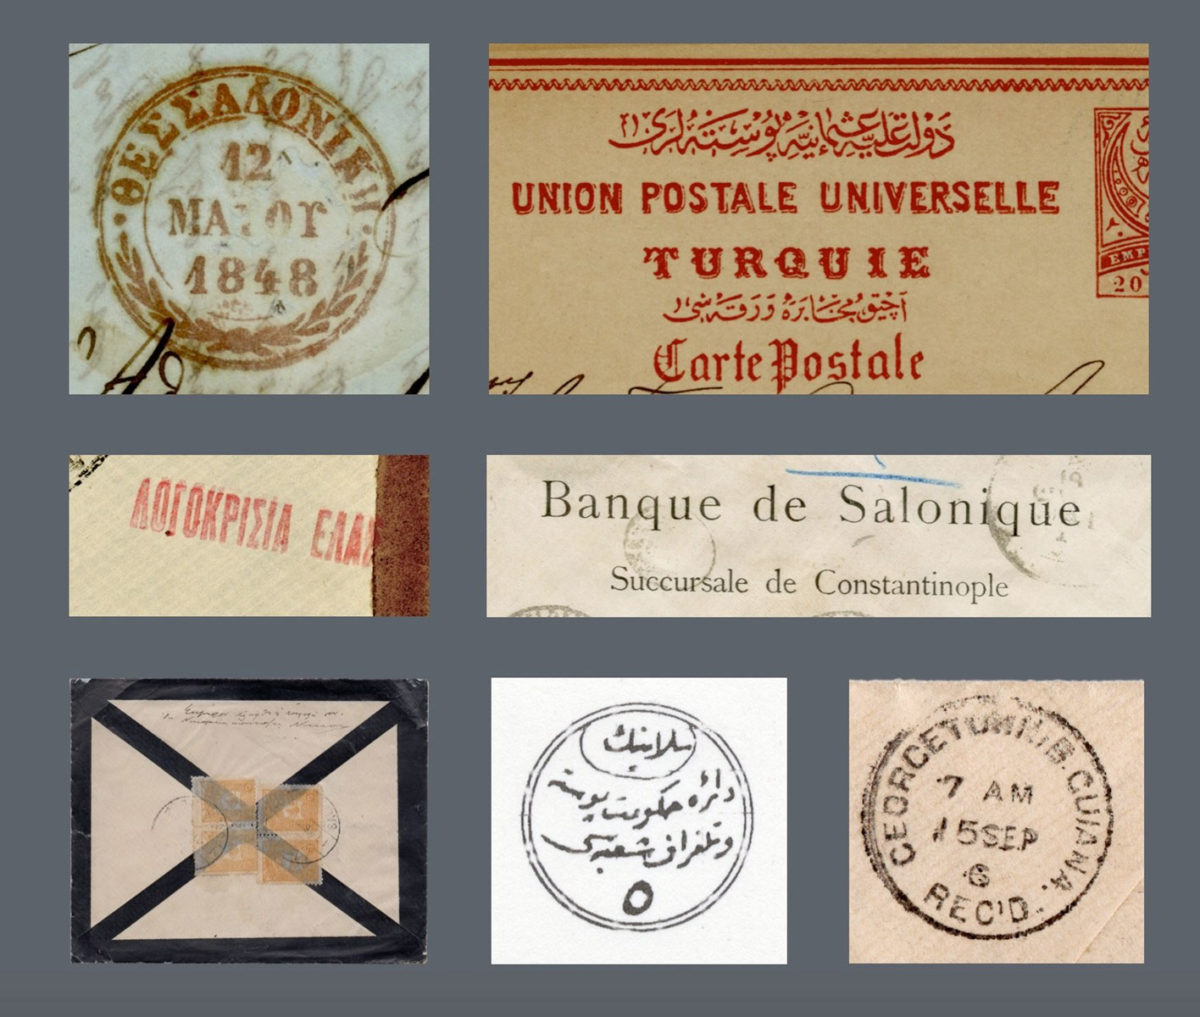 Από την έκθεση «Σφραγίδες, επιστολές, γραμματόσημα. Η ταχυδρομική ιστορία της Θεσσαλονίκης» που παρουσιάζει το Μορφωτικό Ίδρυμα Εθνικής Τραπέζης. 